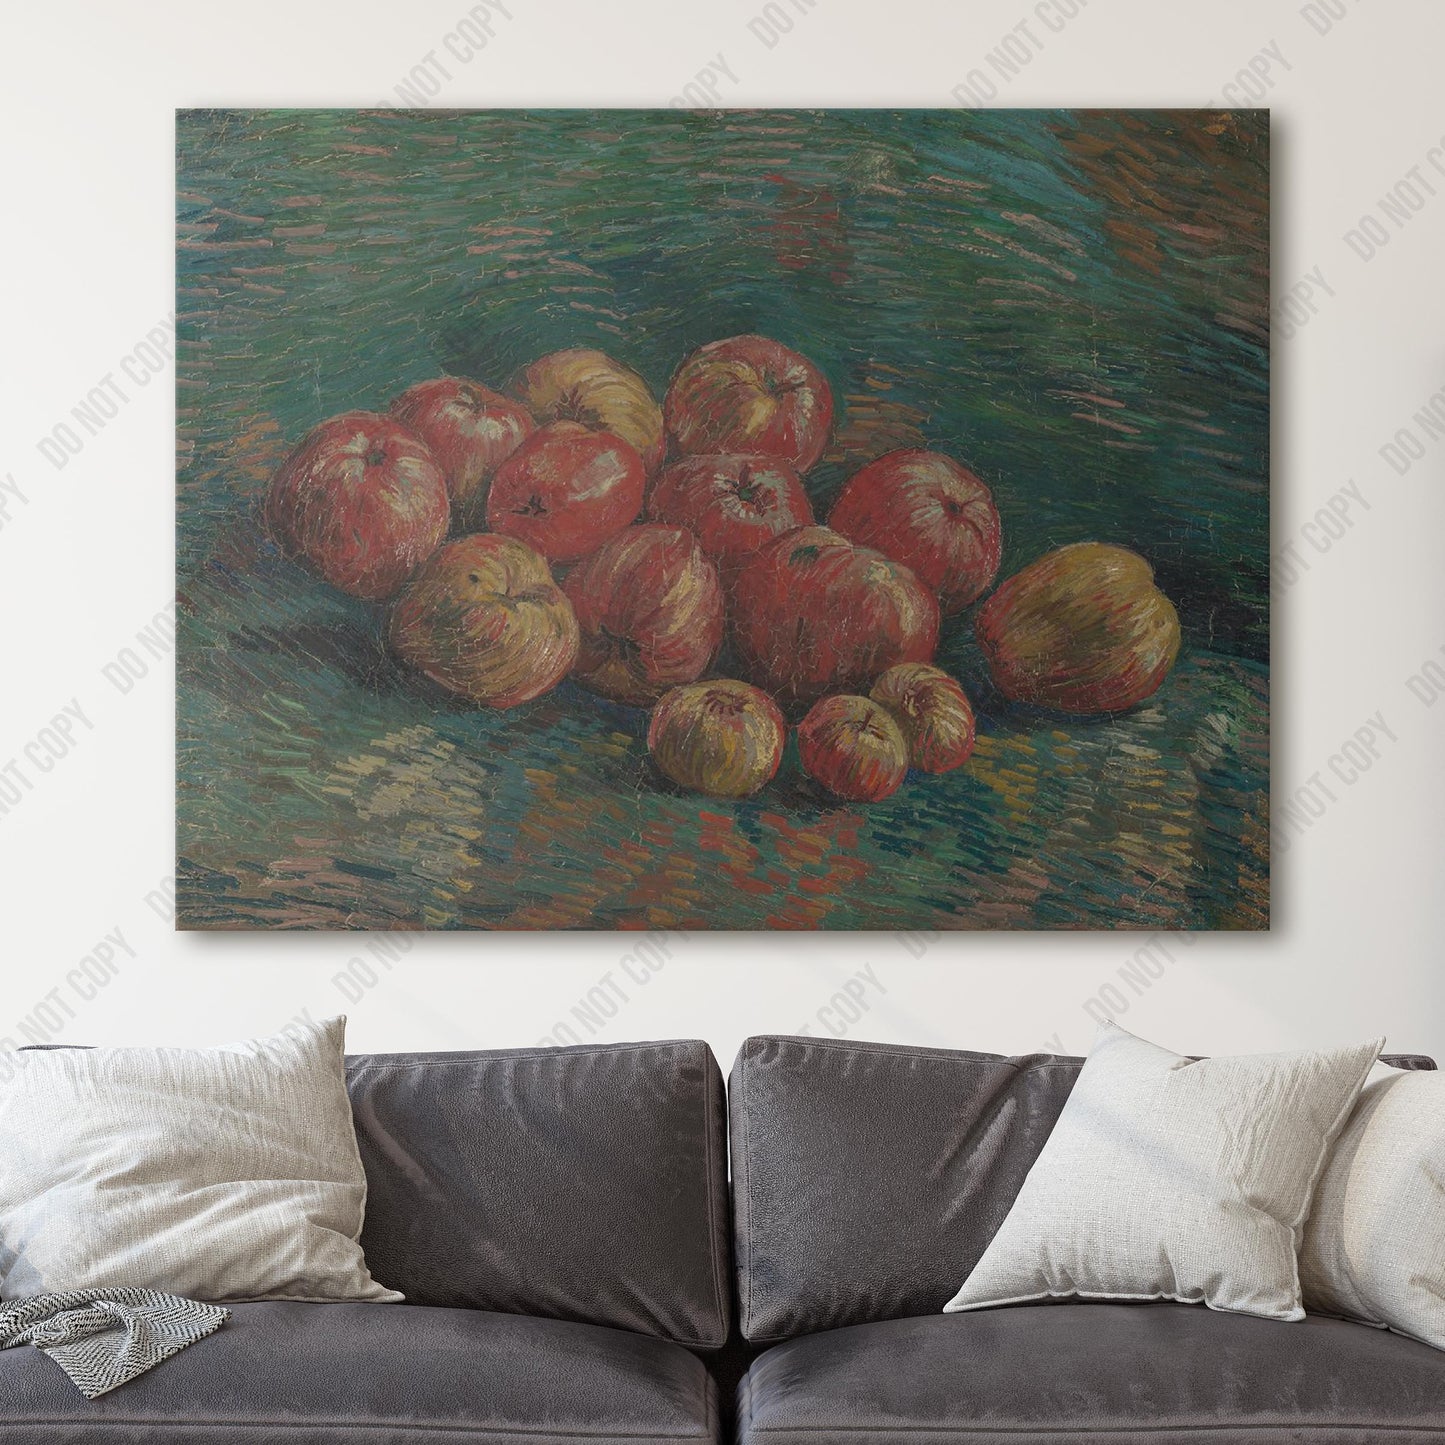 Apples (1887) by Van Gogh